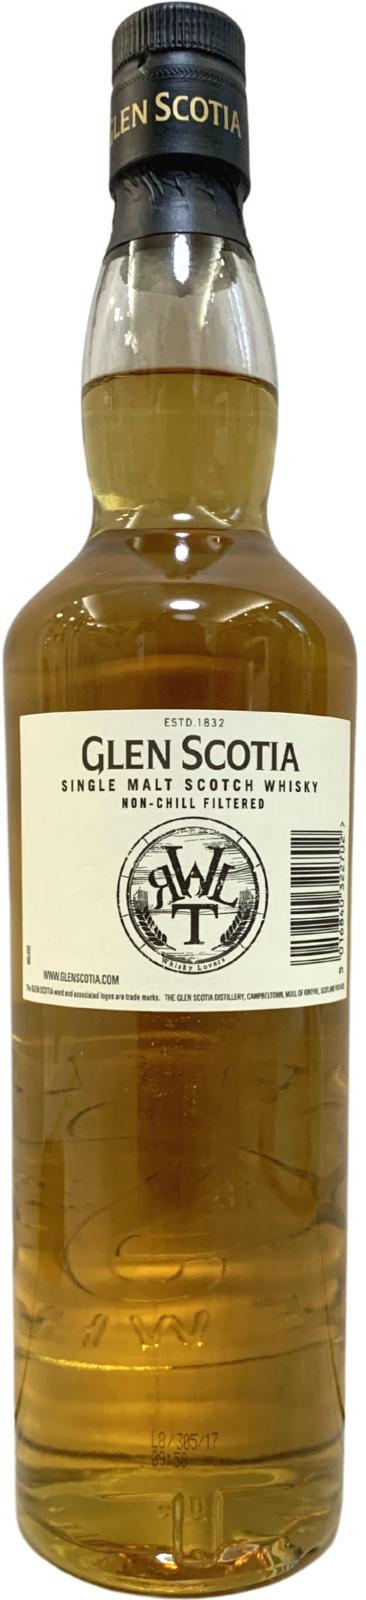 Glen Scotia 2002